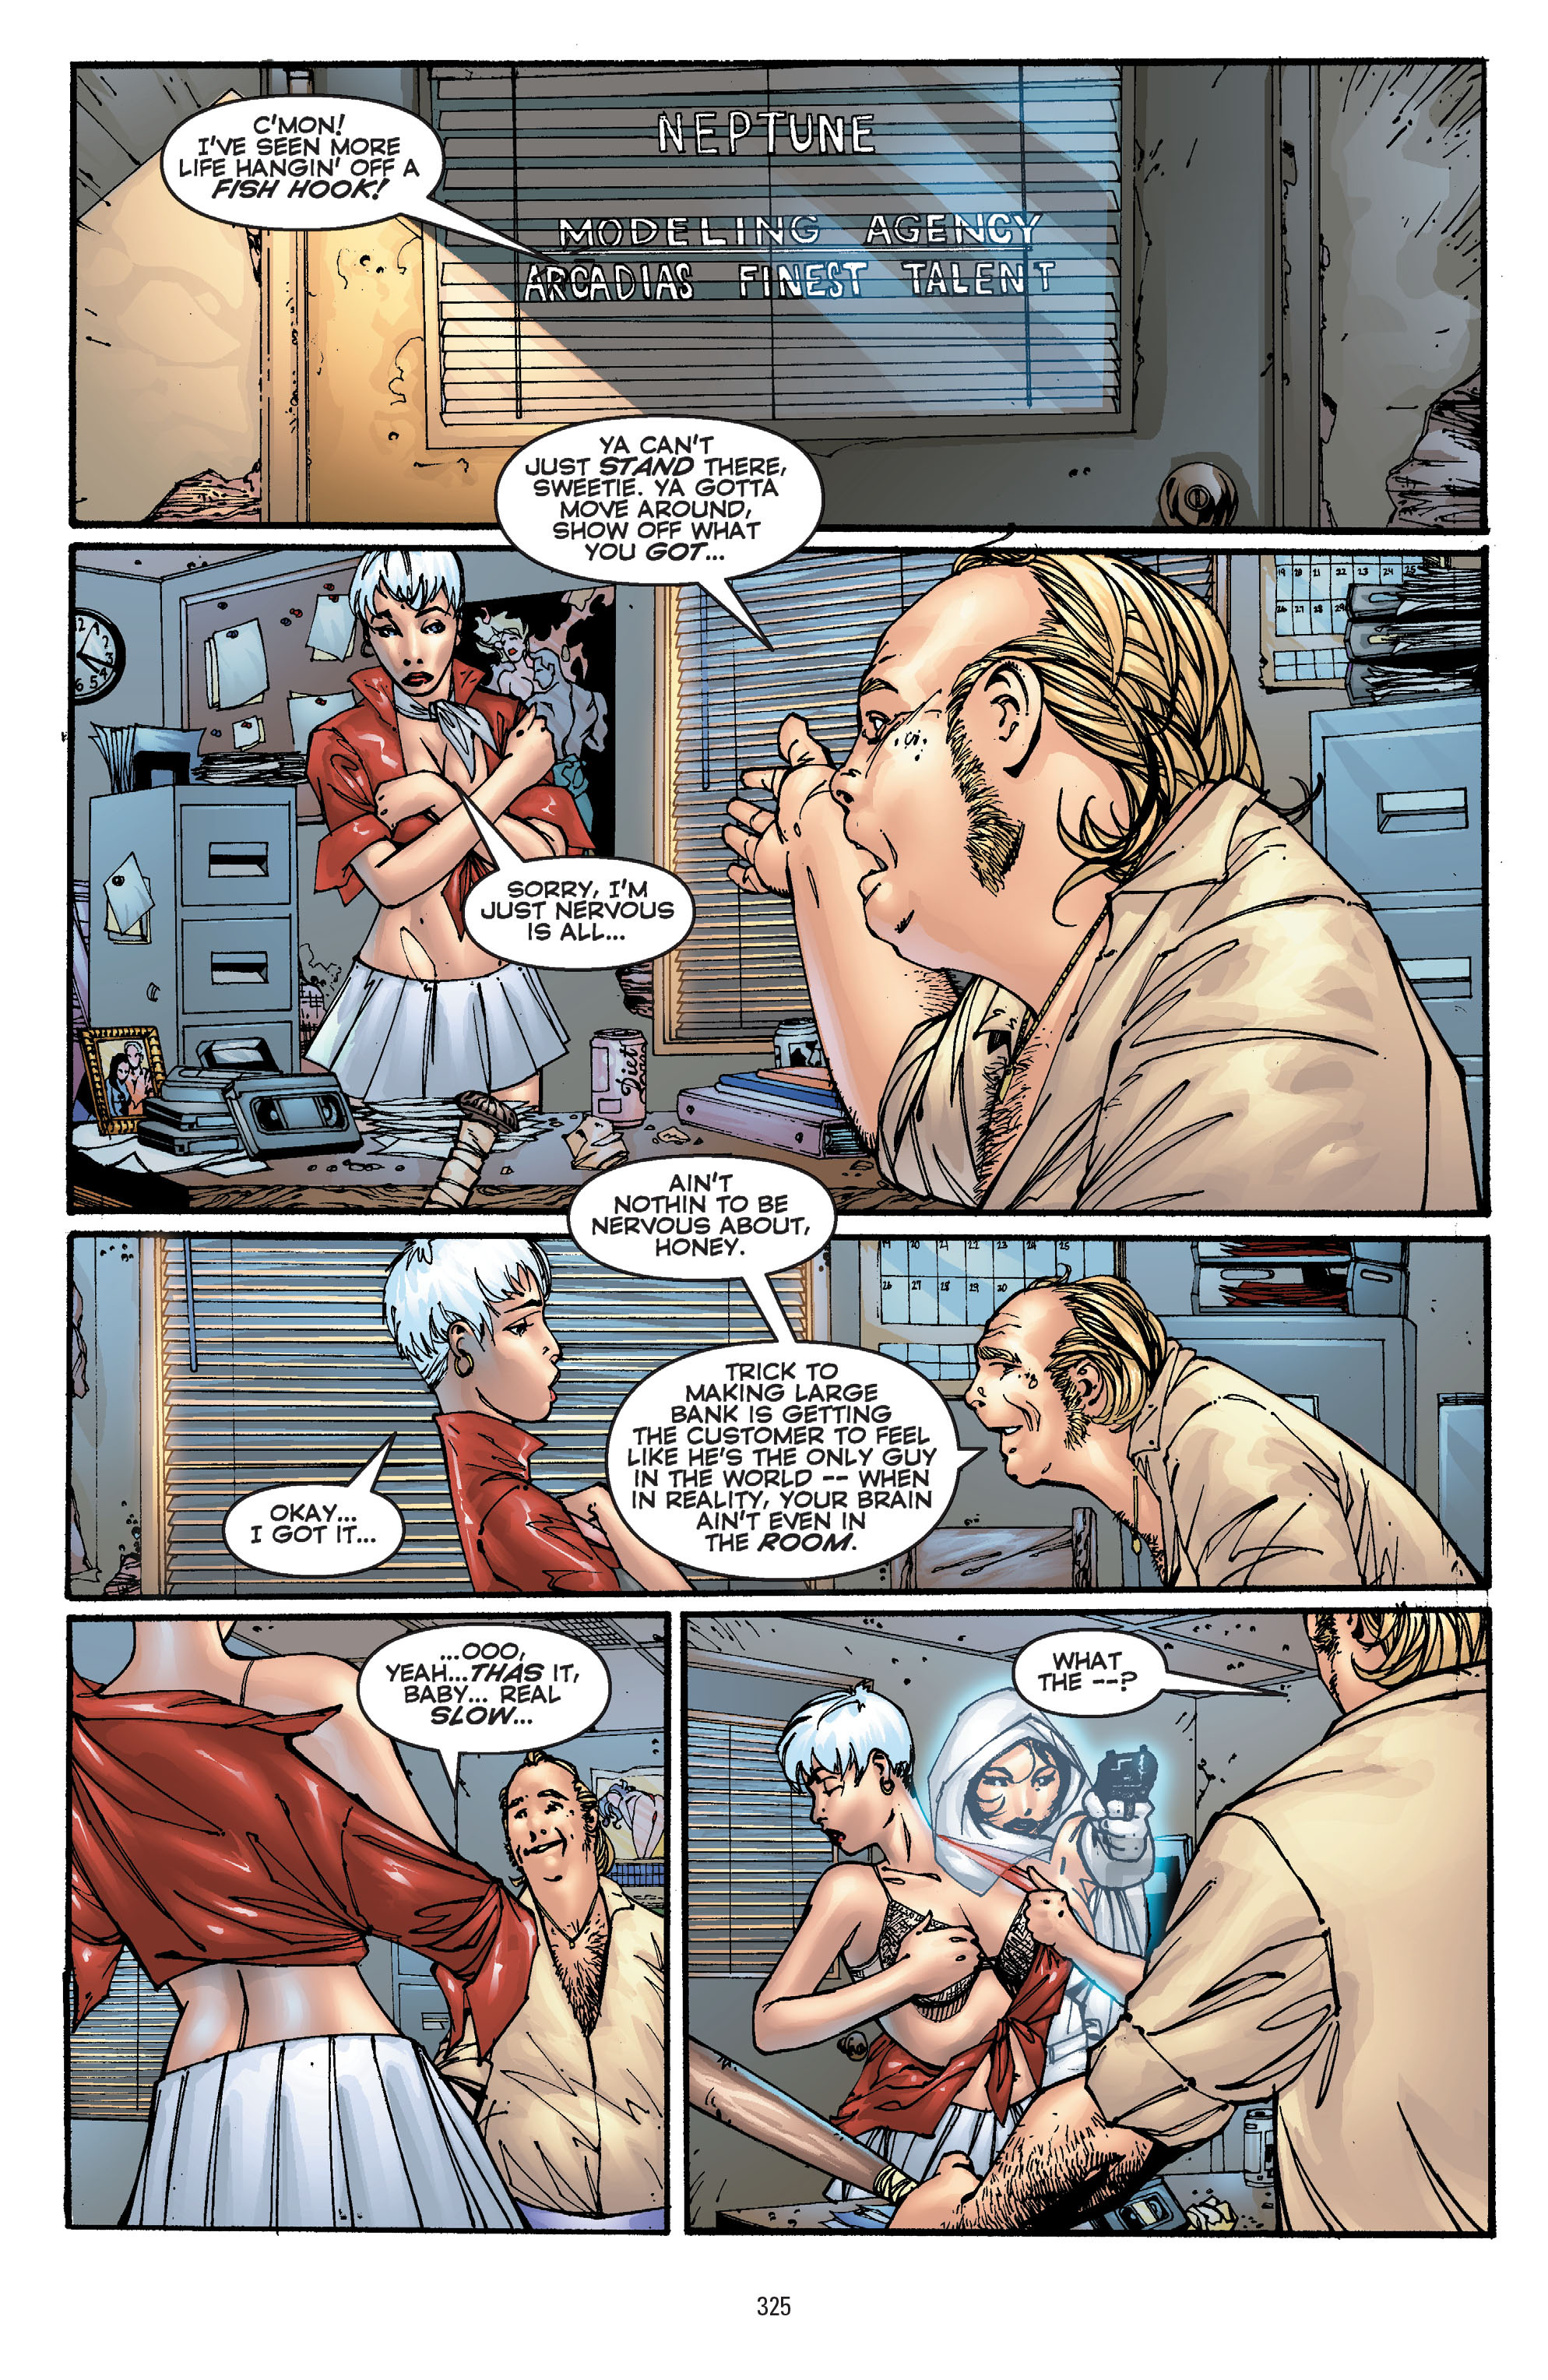 DC Comics/Dark Horse Comics: Justice League Full #1 - English 315